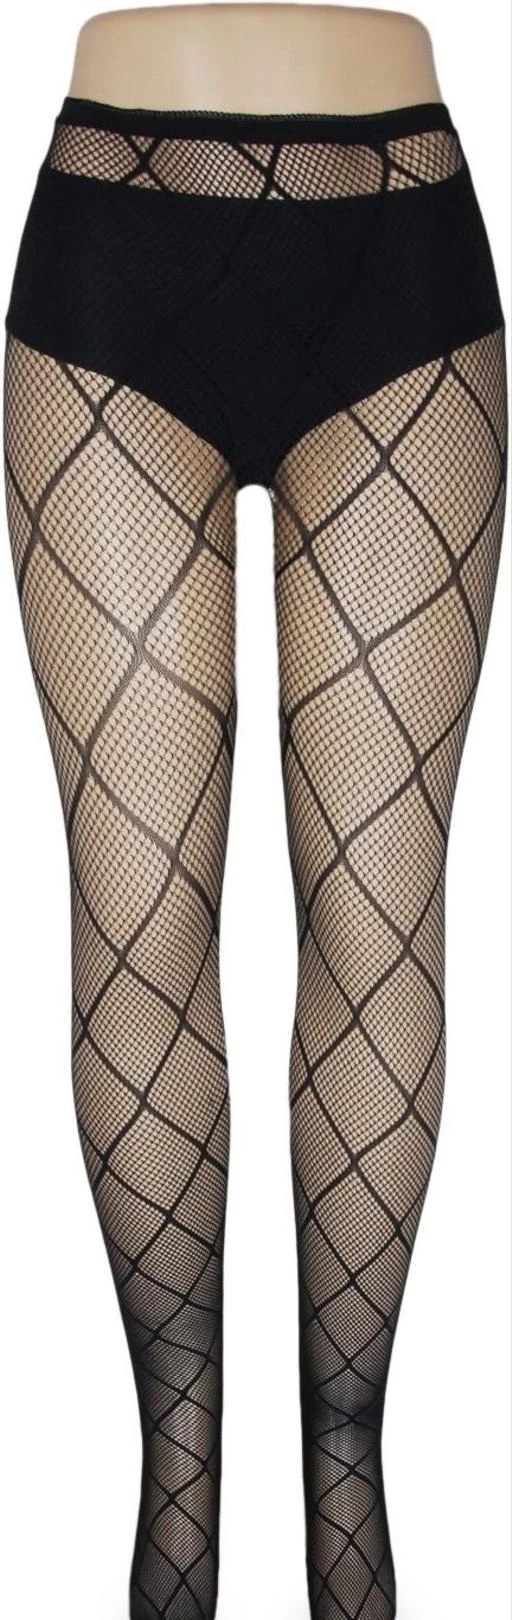  Neska Moda Women Nylon Spandex Black Pantyhose High Waist Fishnet